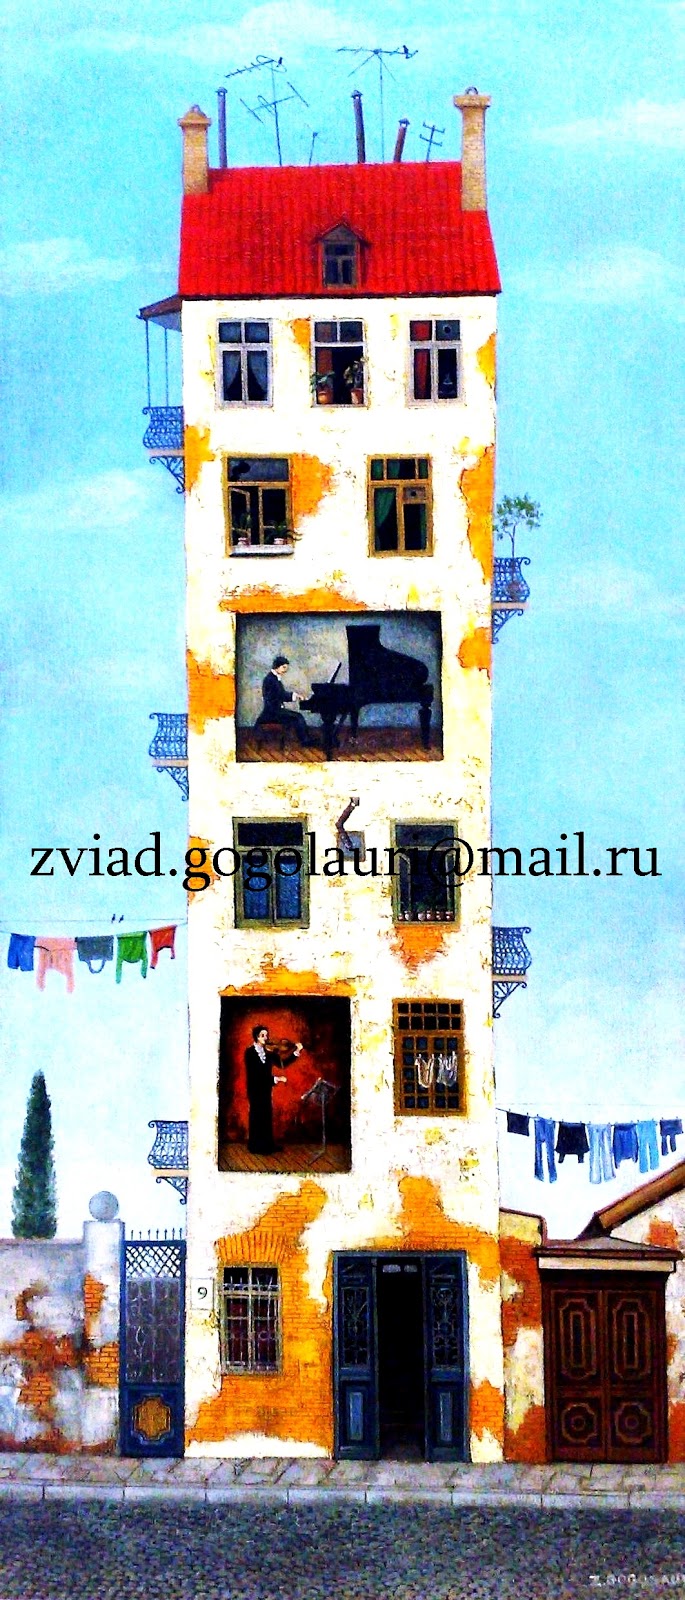 The artist-painter Zviad Gogolauri